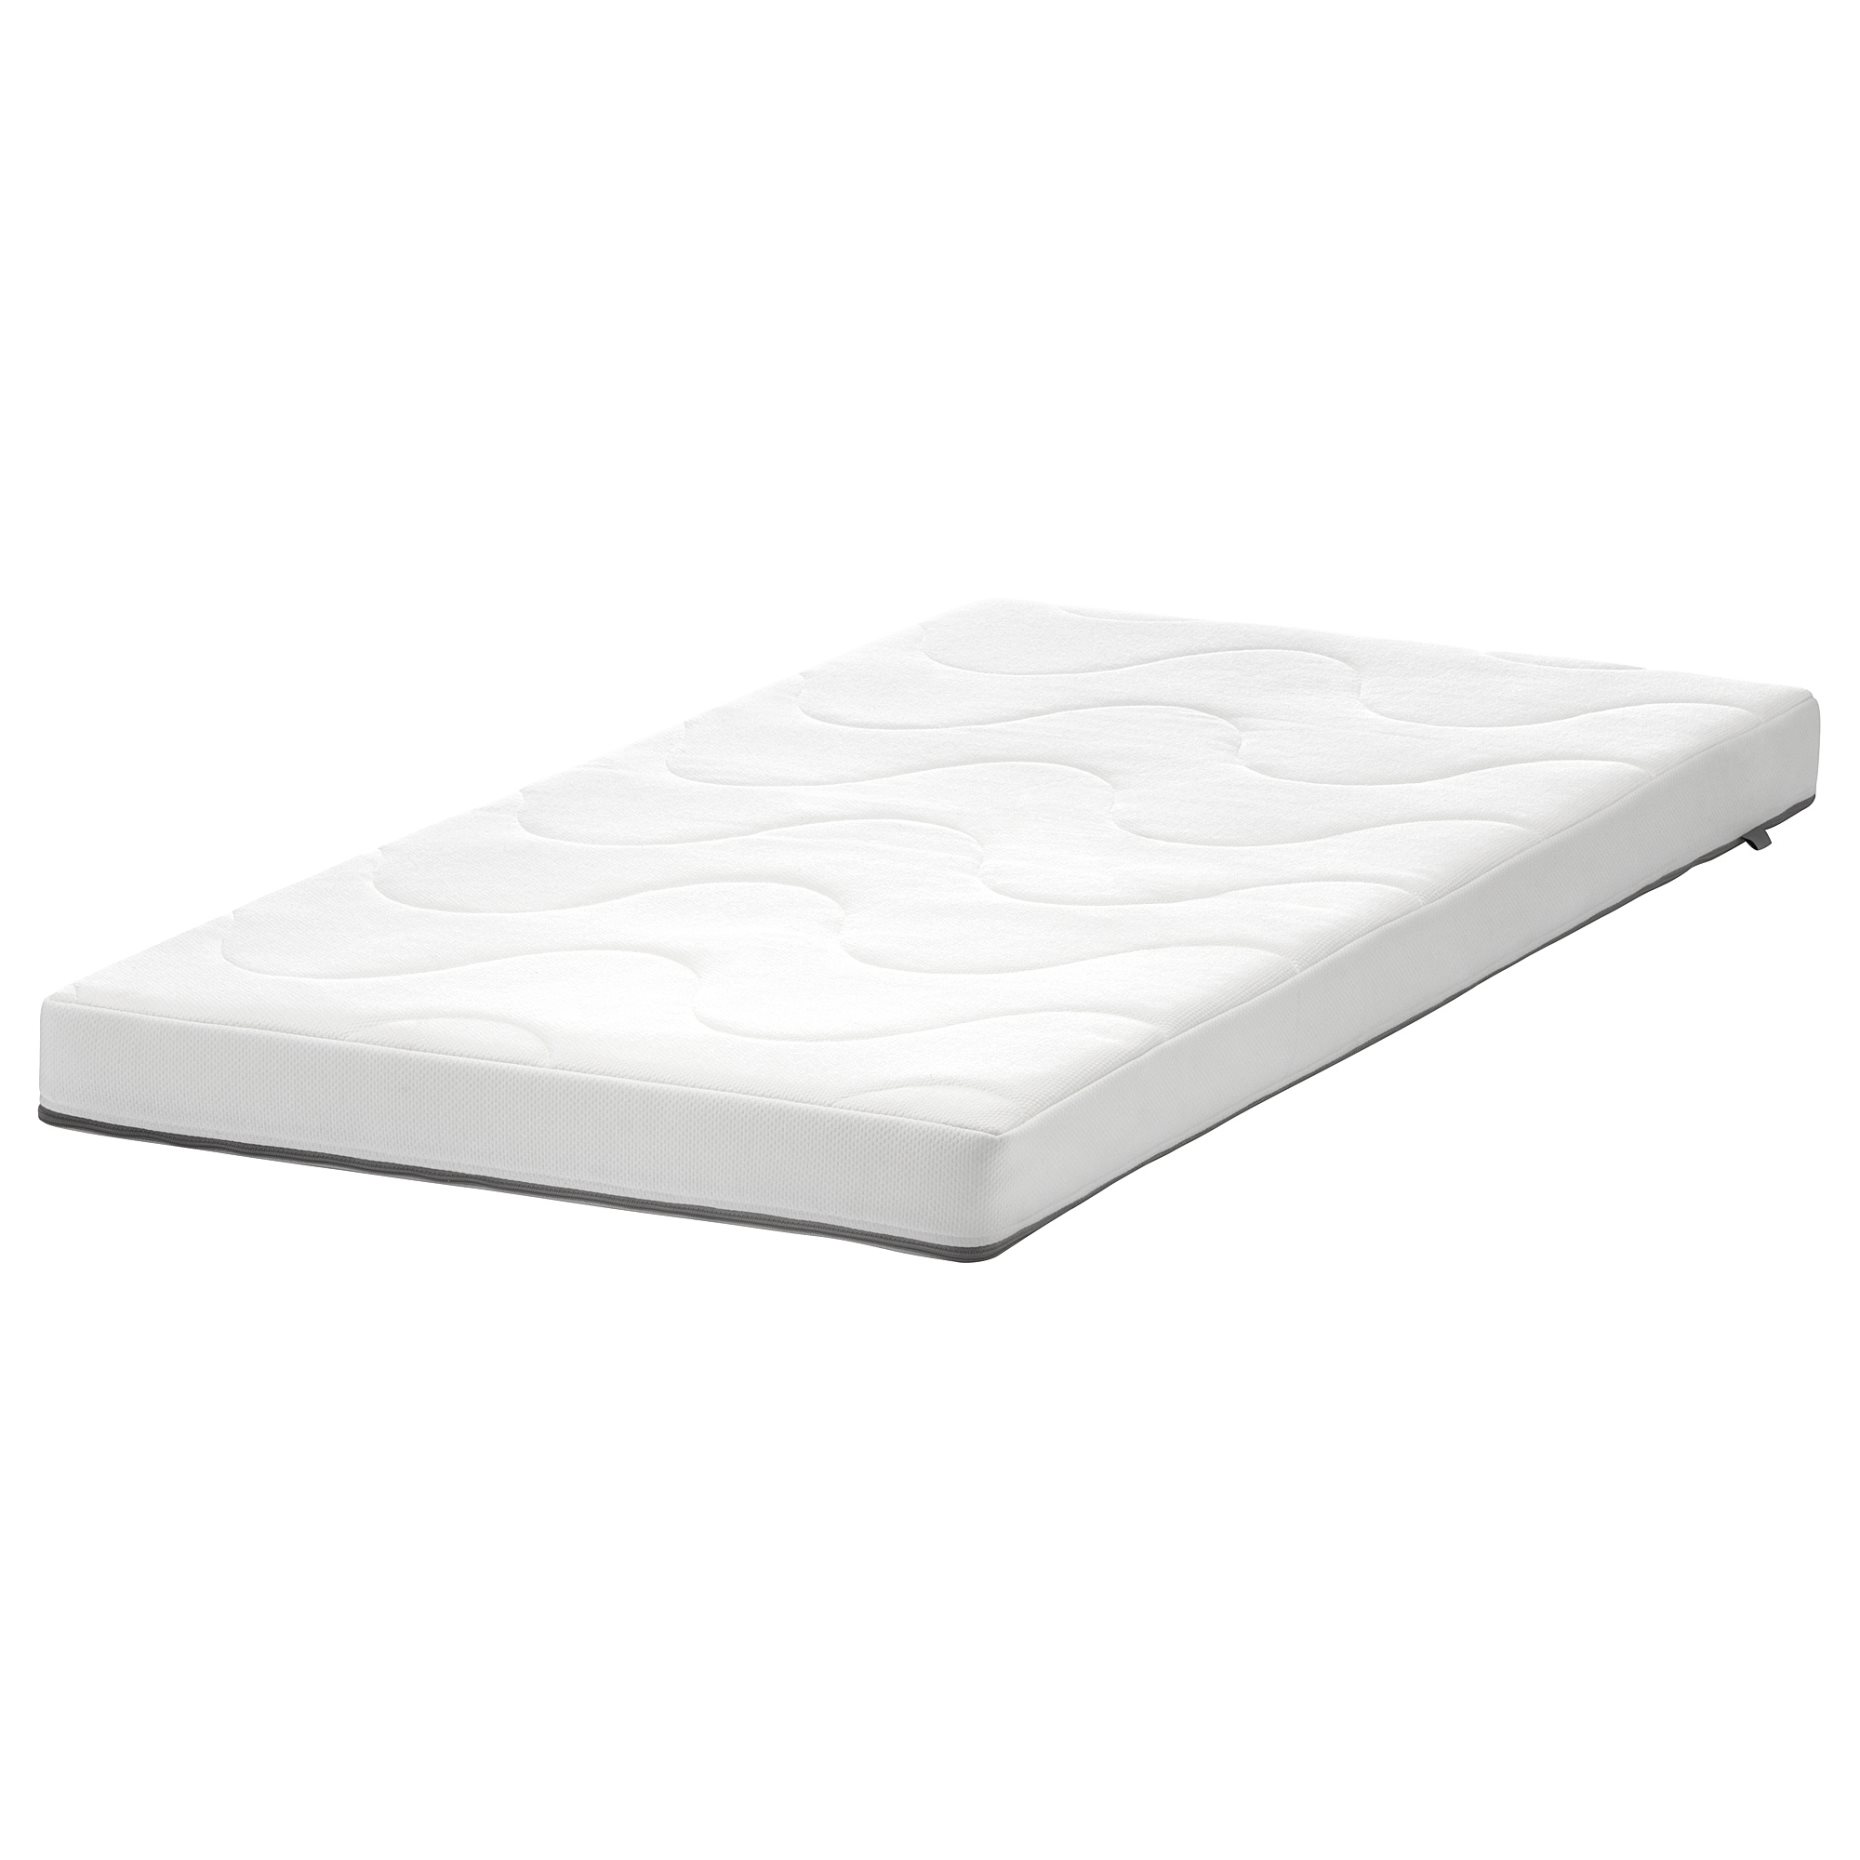 KRUMMELUR, foam mattress for cot, 803.554.50